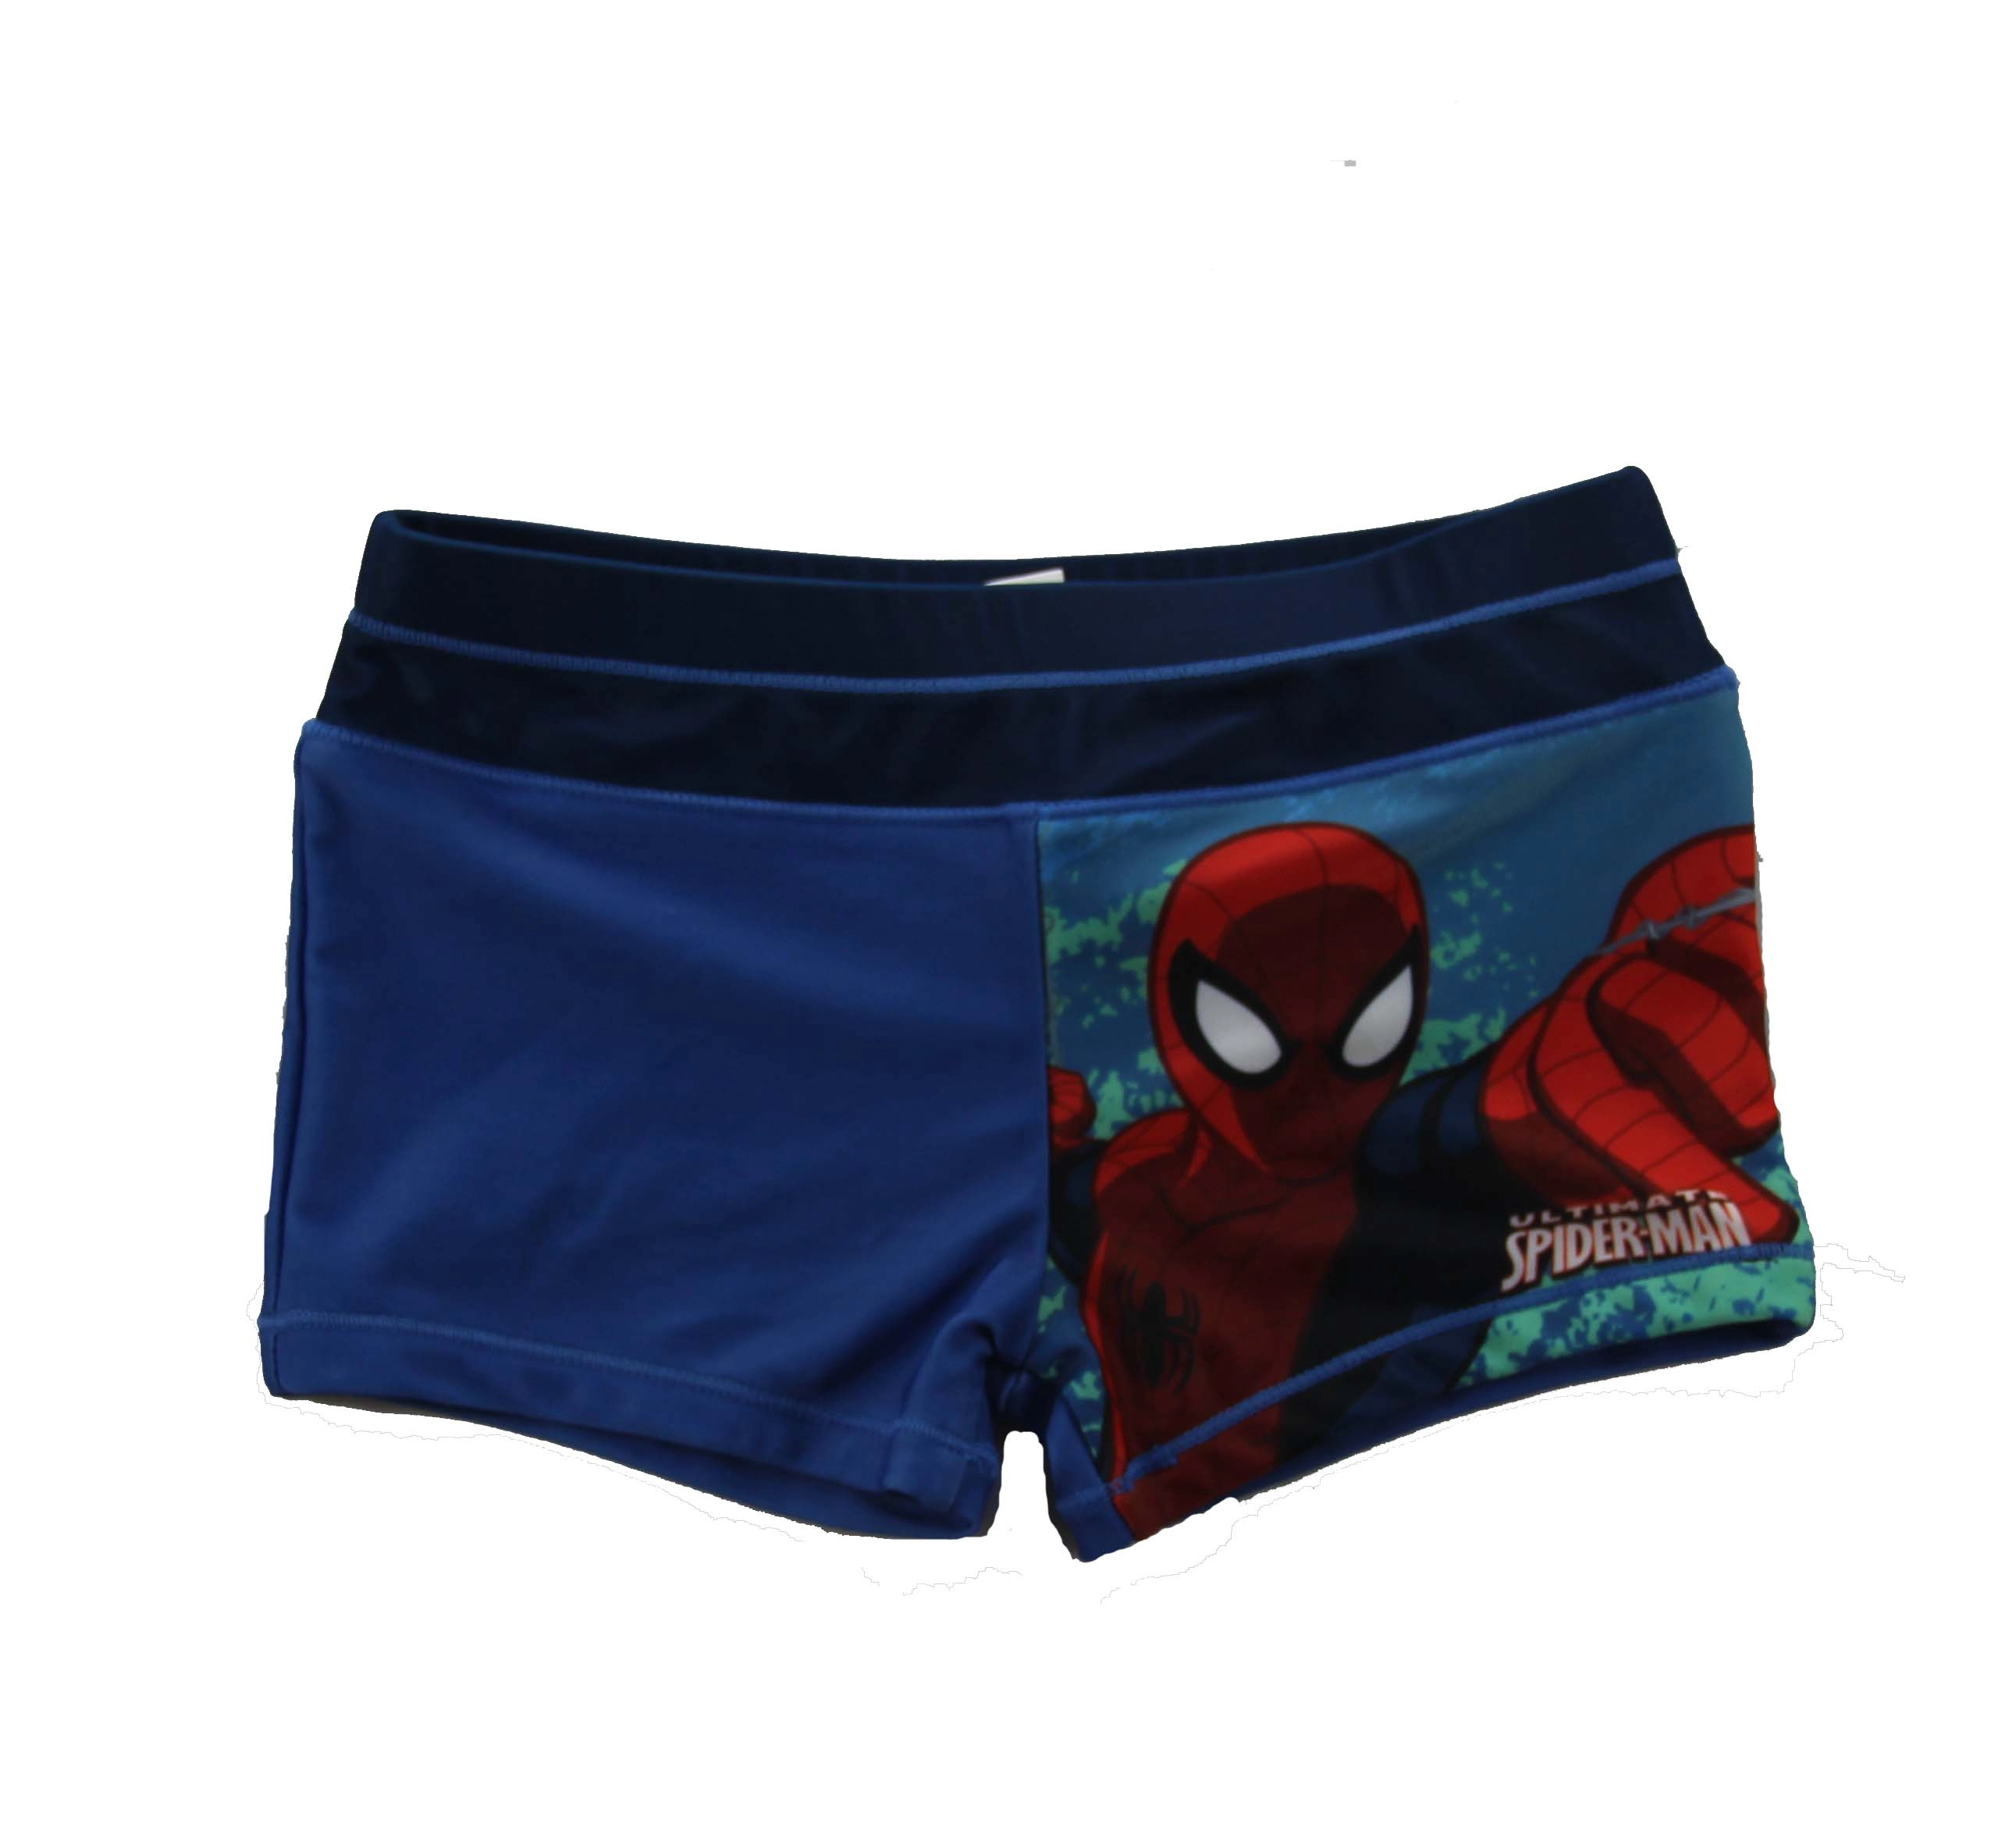 Spider-Man blauwe onderbroek voor kleine jongen